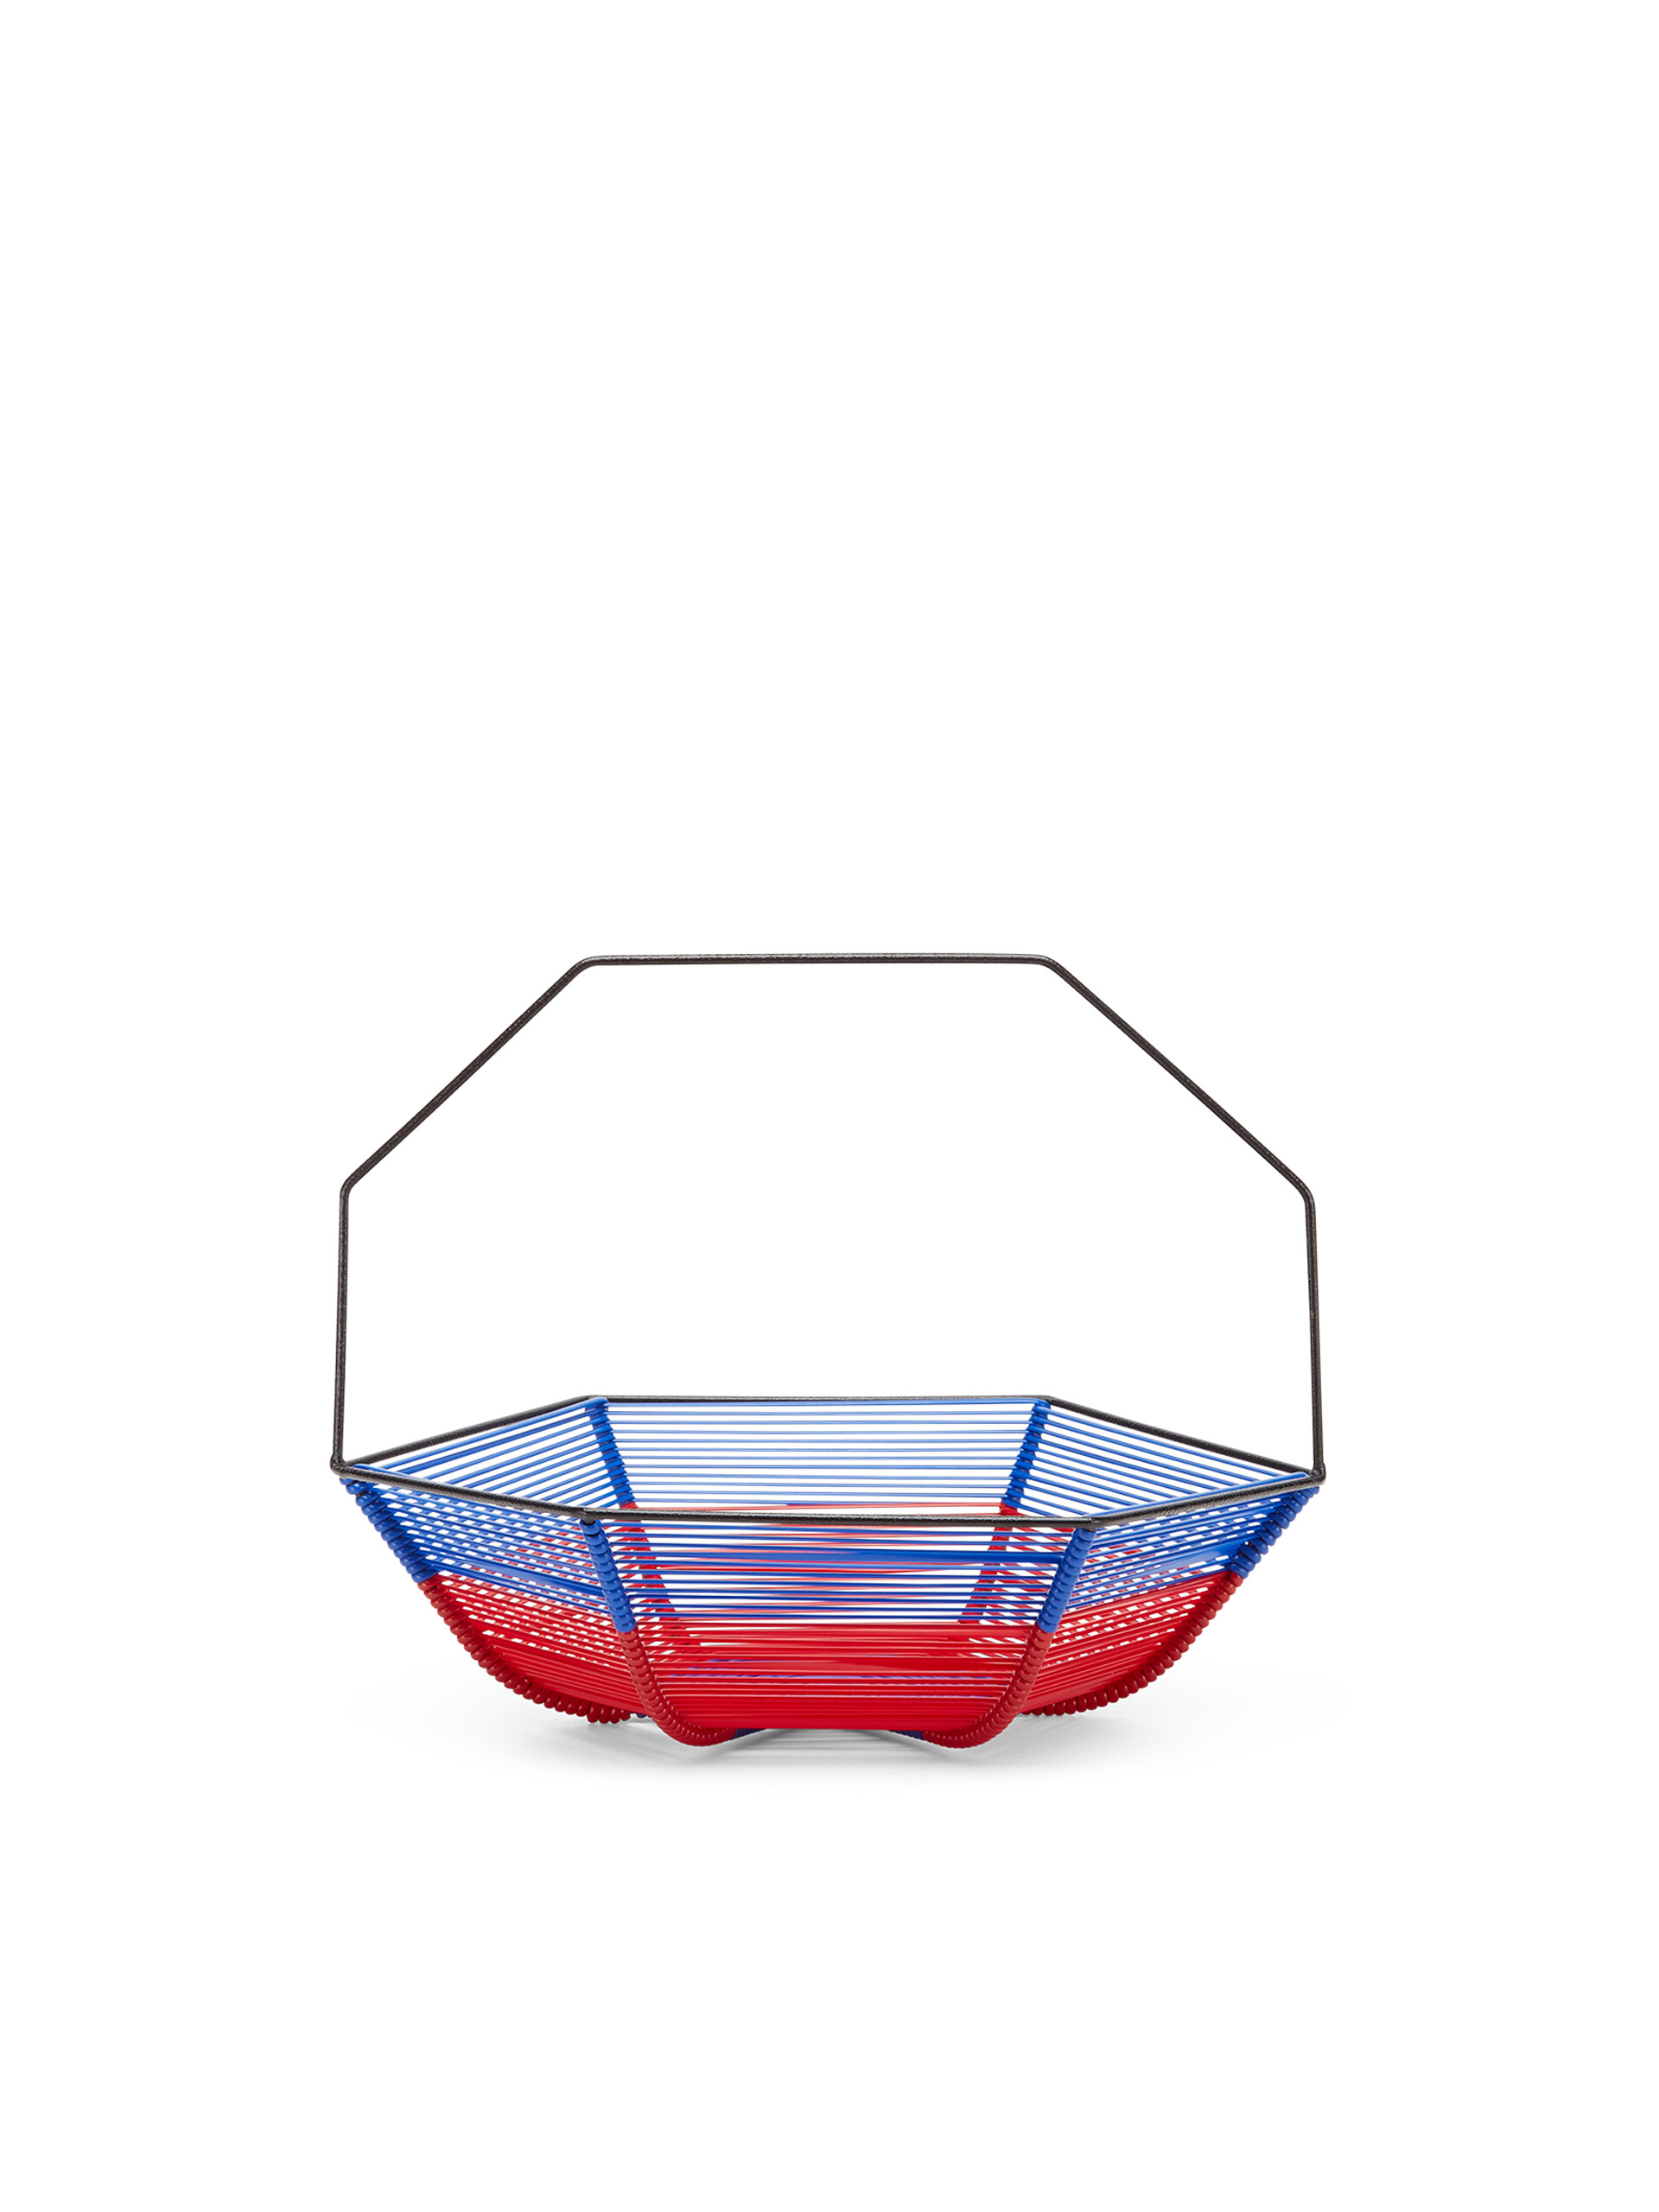 Corbeille à fruits hexagonale MARNI MARKET bleu et rouge - Accessoires - Image 3